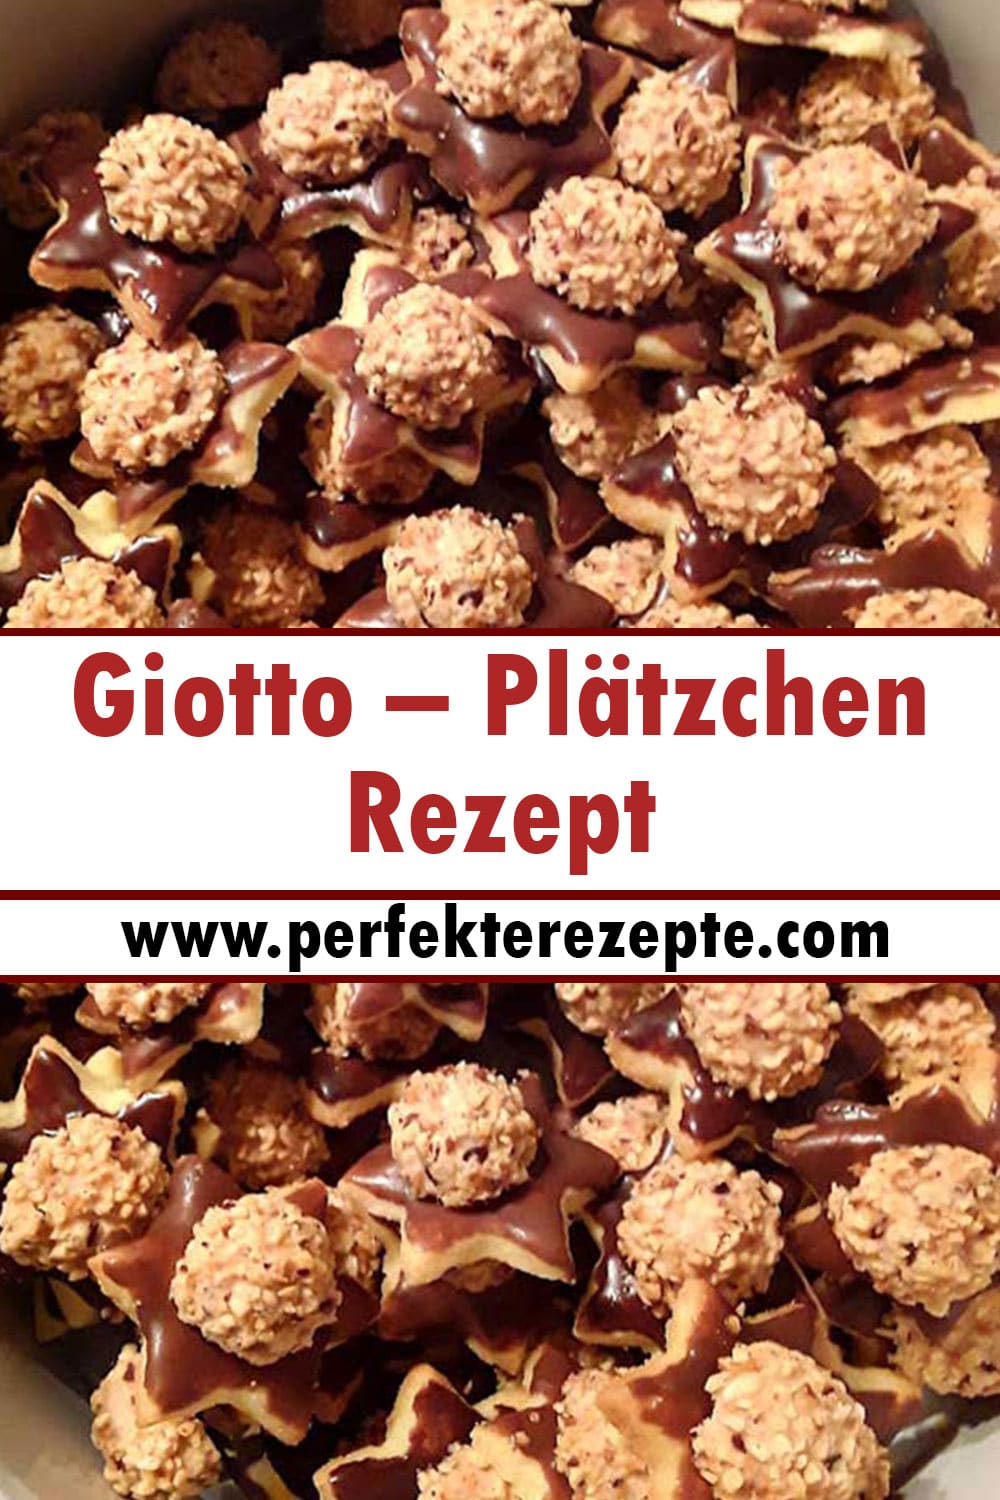 Giotto-Plätzchen Rezept